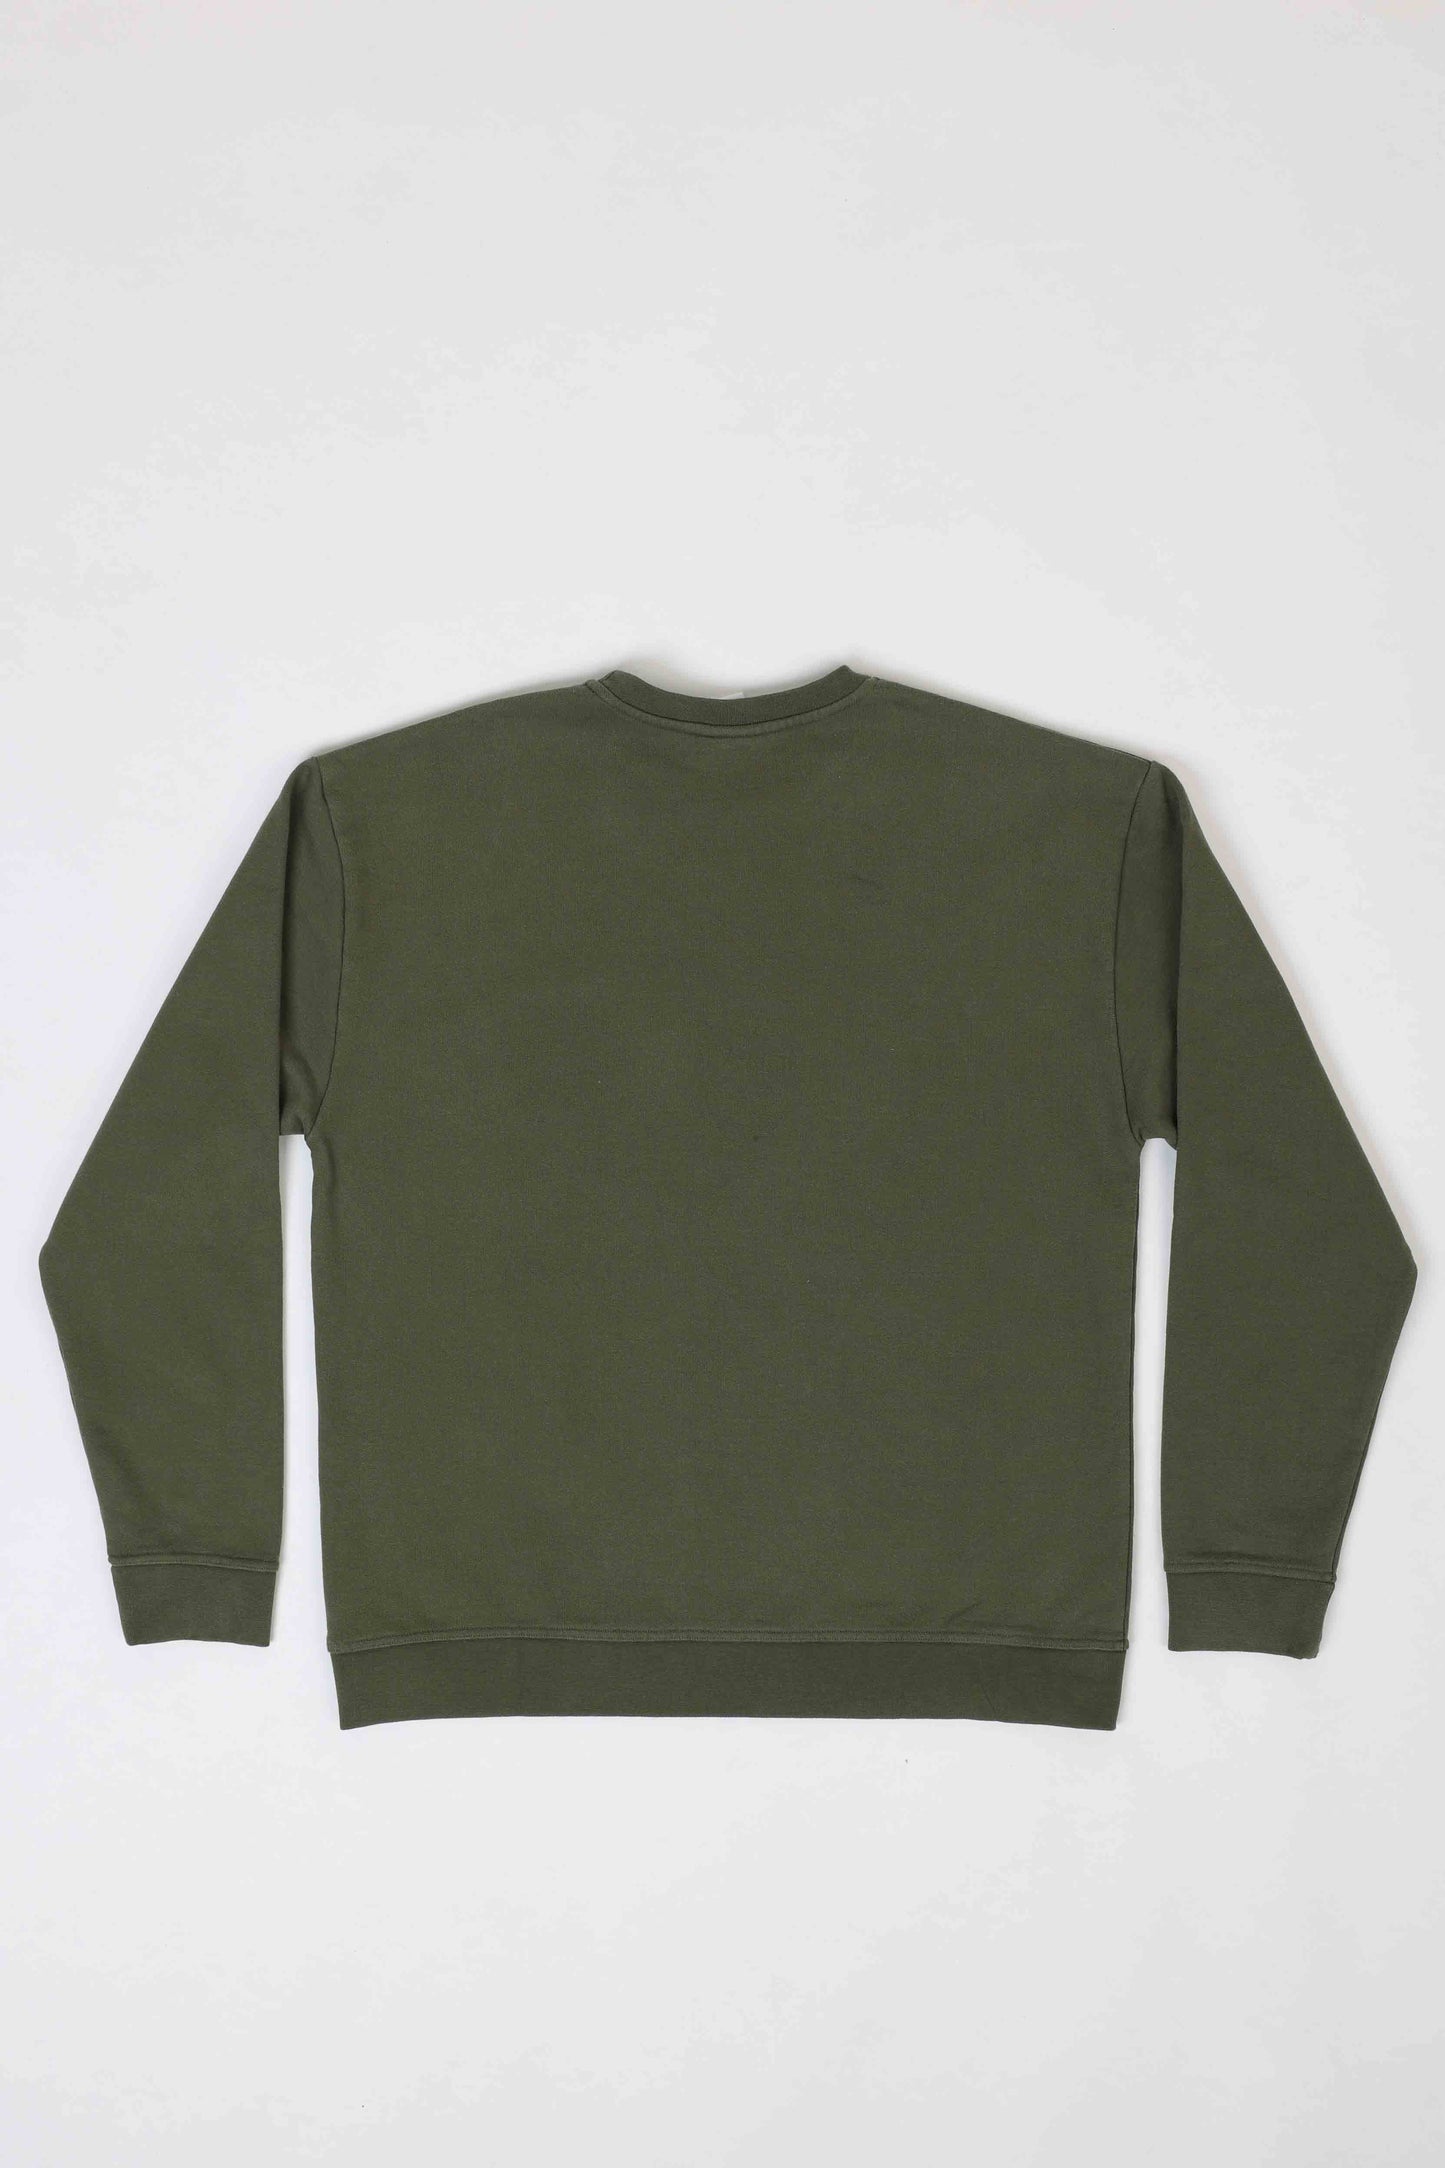 Early Earth Fleece Crewneck Sweater - Moss